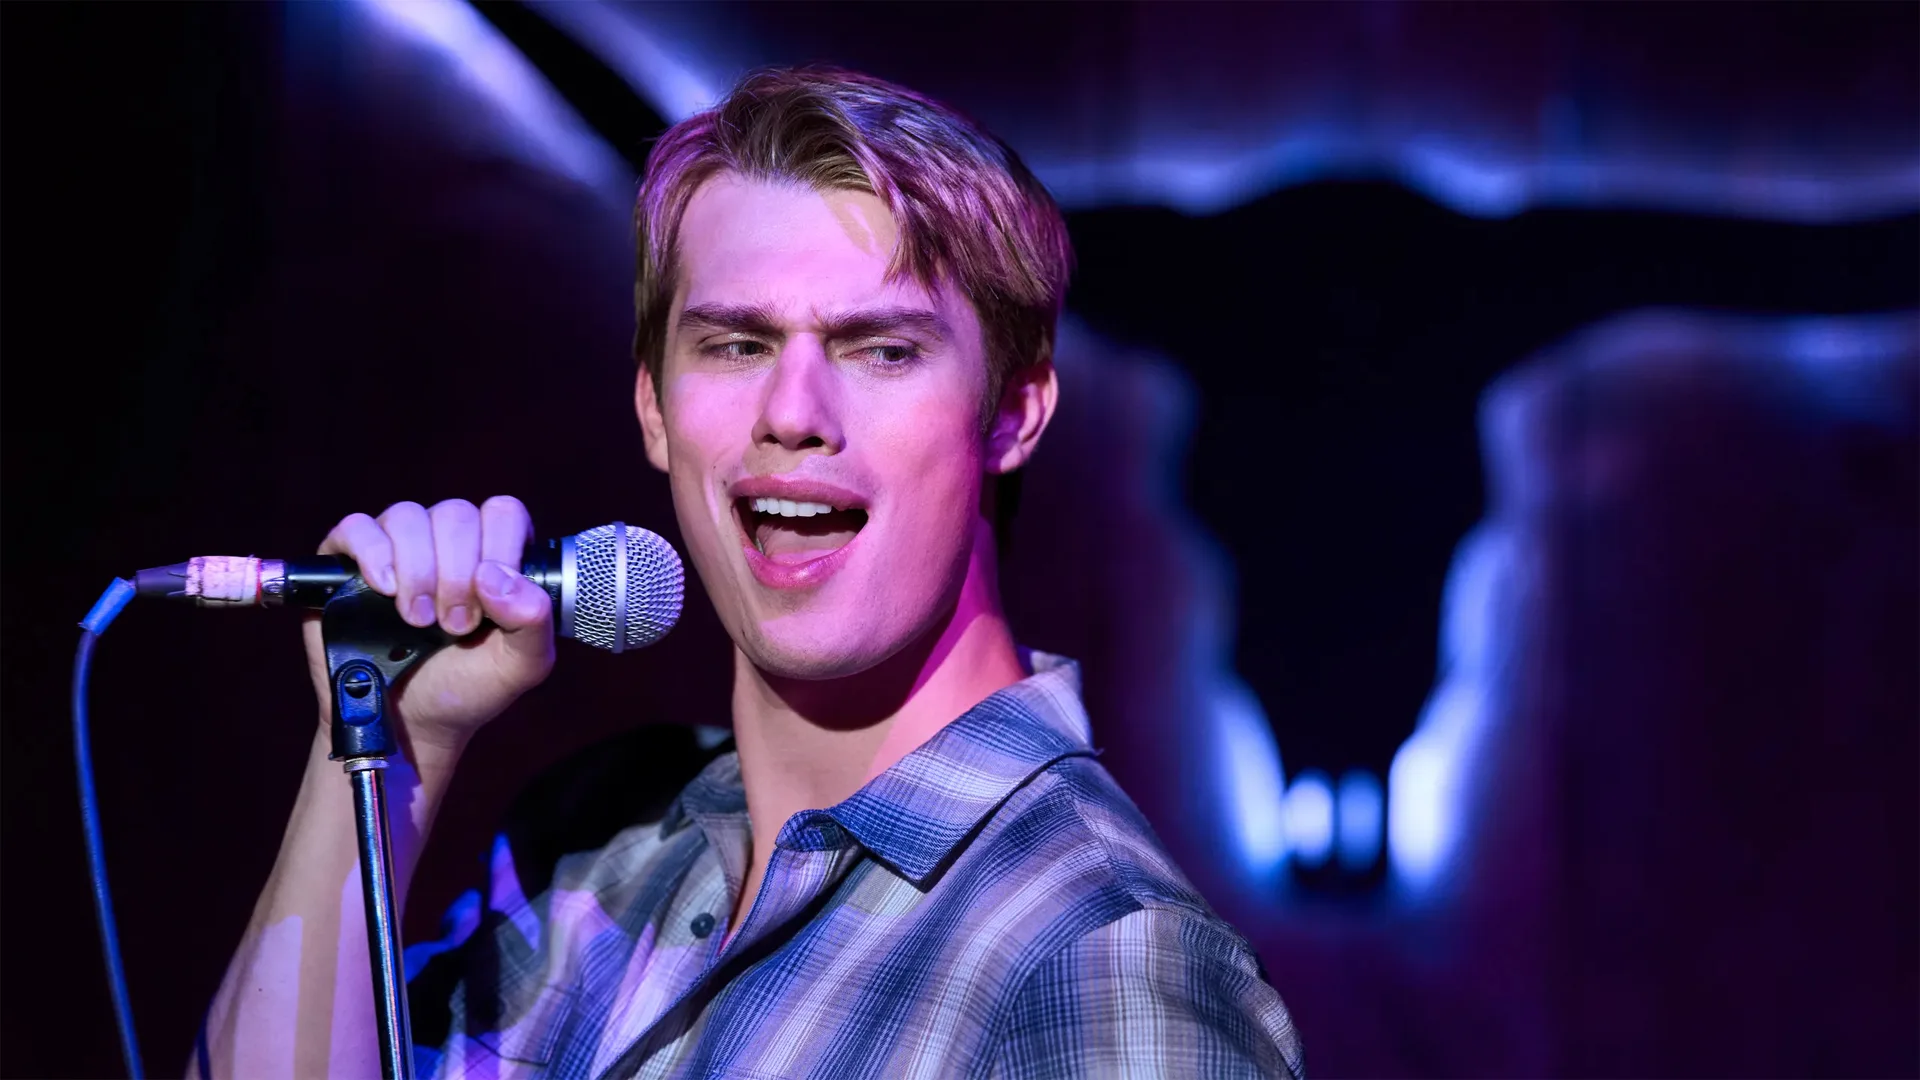 Nicholas Galitzine cantando en un karaoke, Rojo, blanco y sangre azul.